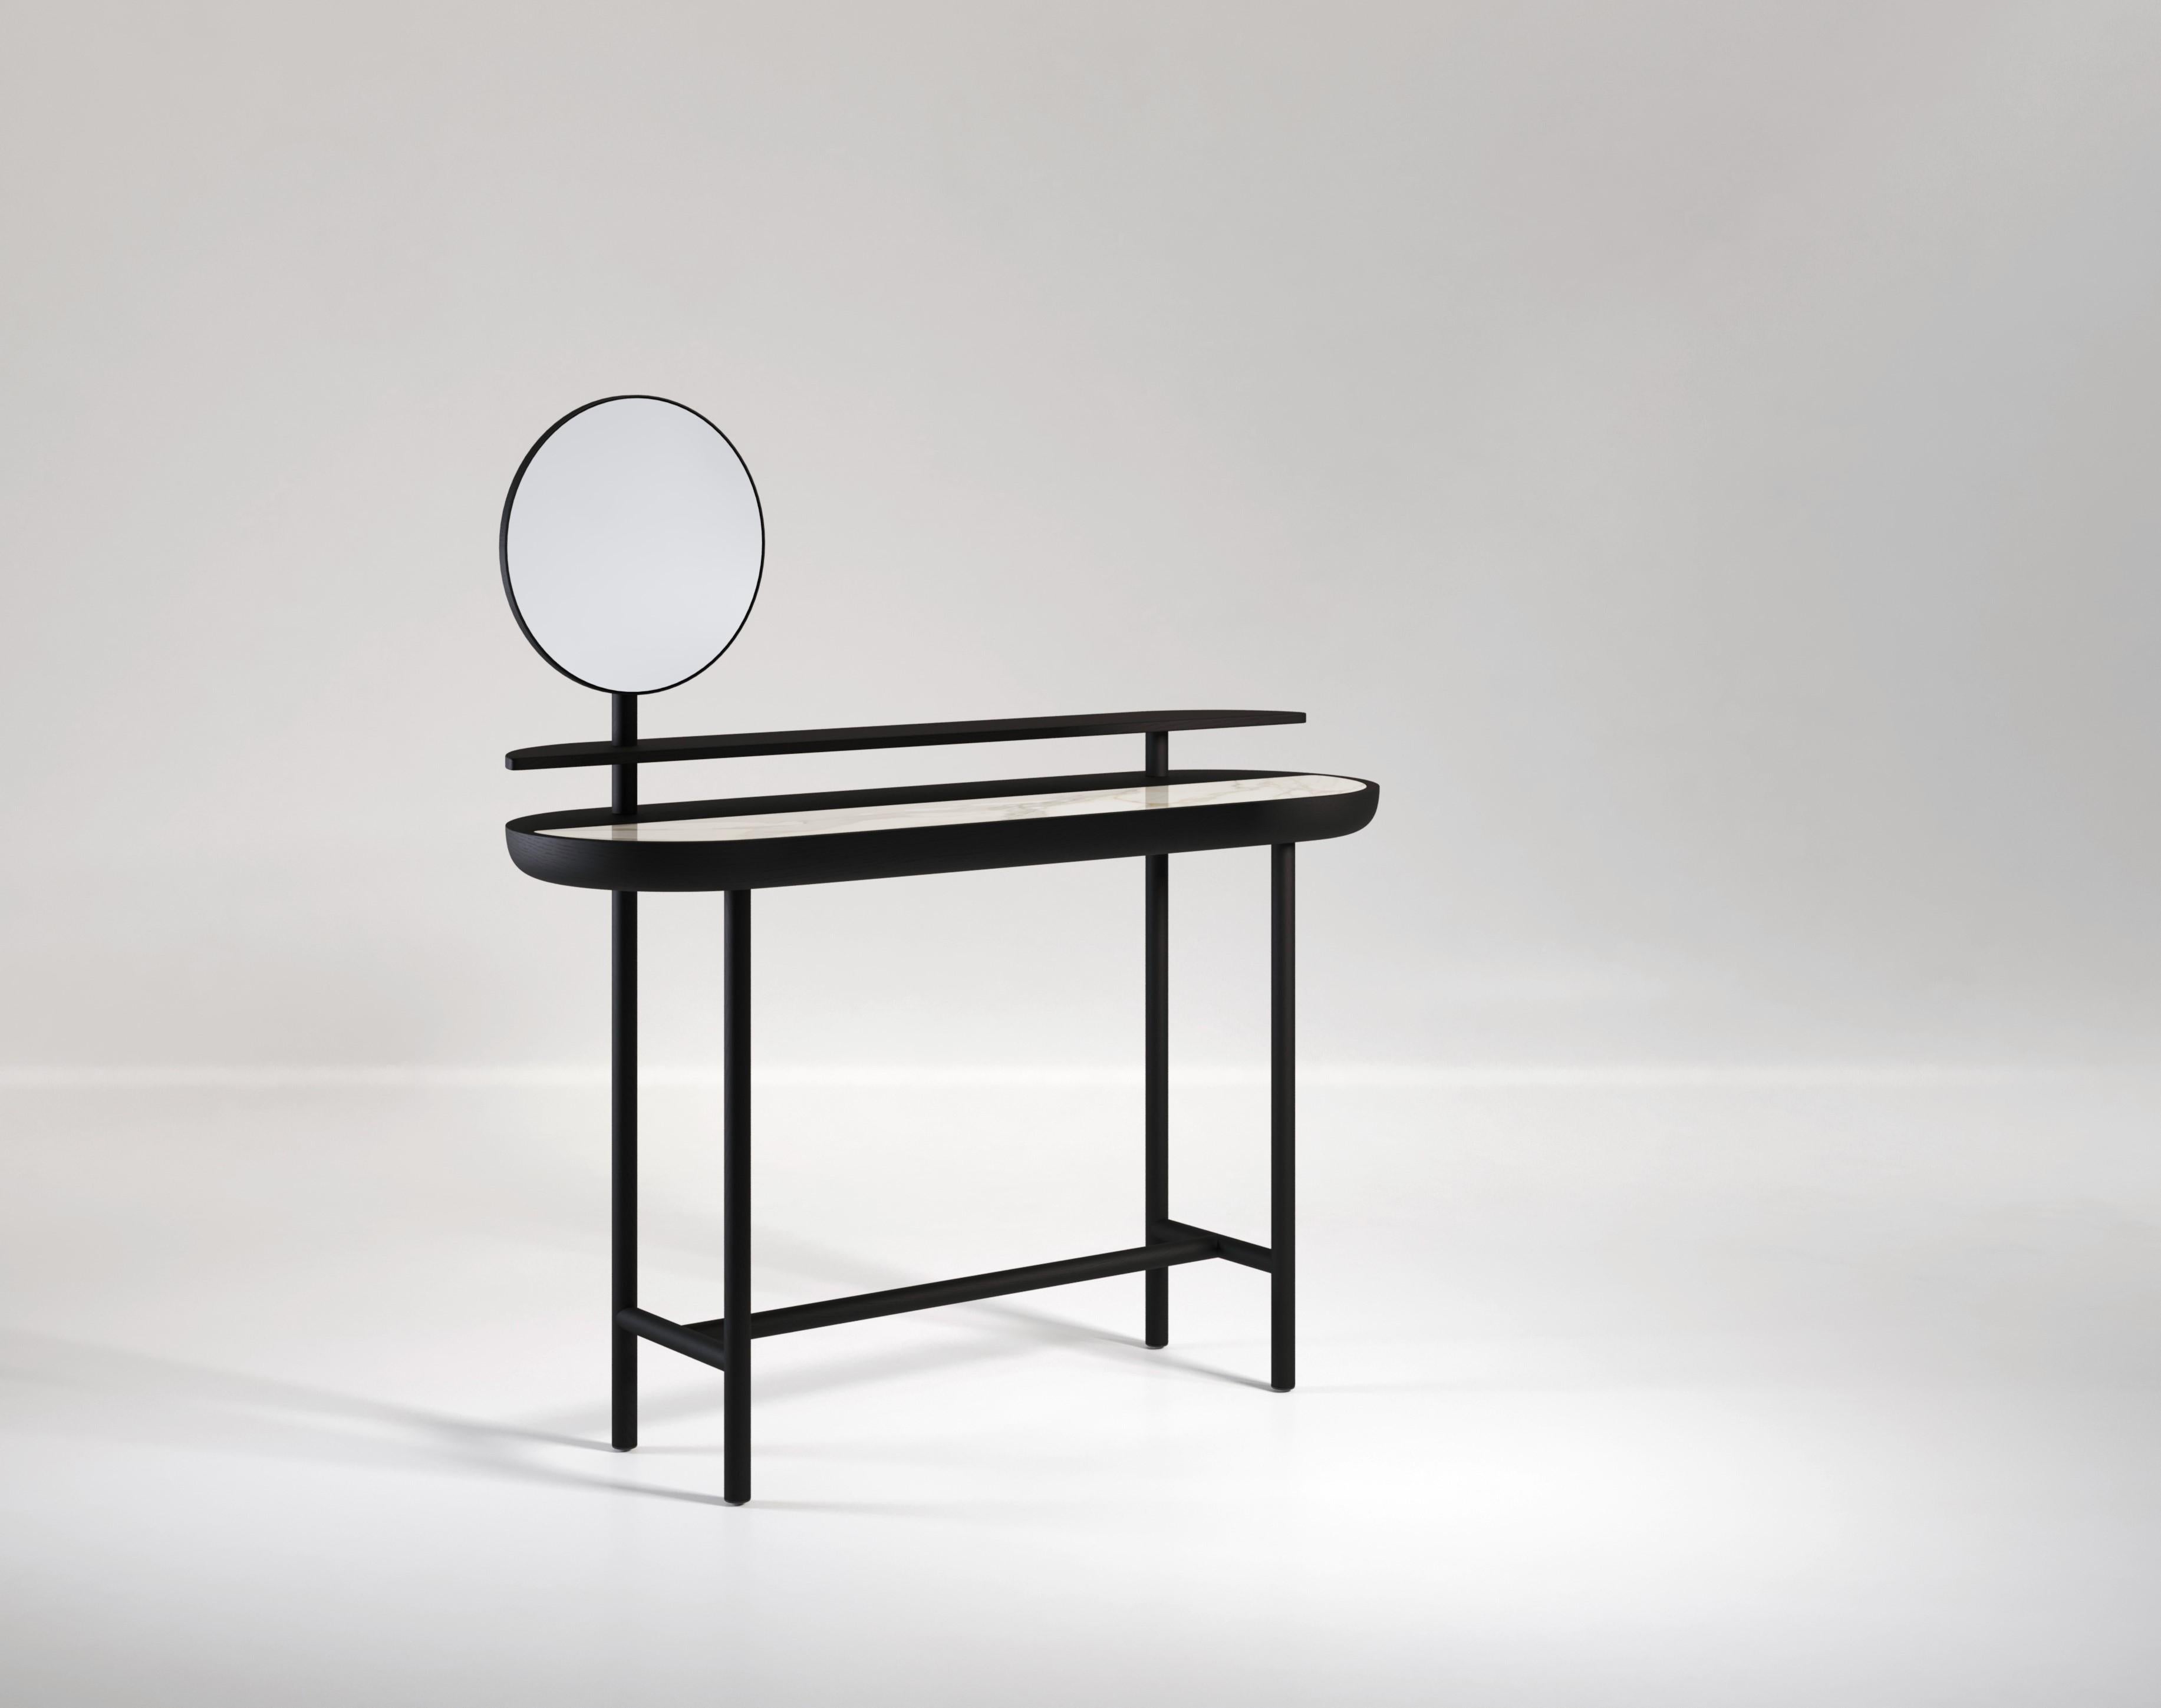 Der Apollo-Schreibtisch ist ein Schreibtisch aus Holz und Marmor mit zwei Ebenen und drehbarem Spiegel, der sich perfekt als Schminktisch eignet. Apollo zeichnet sich durch weiche Kurven und runde Formen aus und ist in verschiedenen Holz-, Metall-,